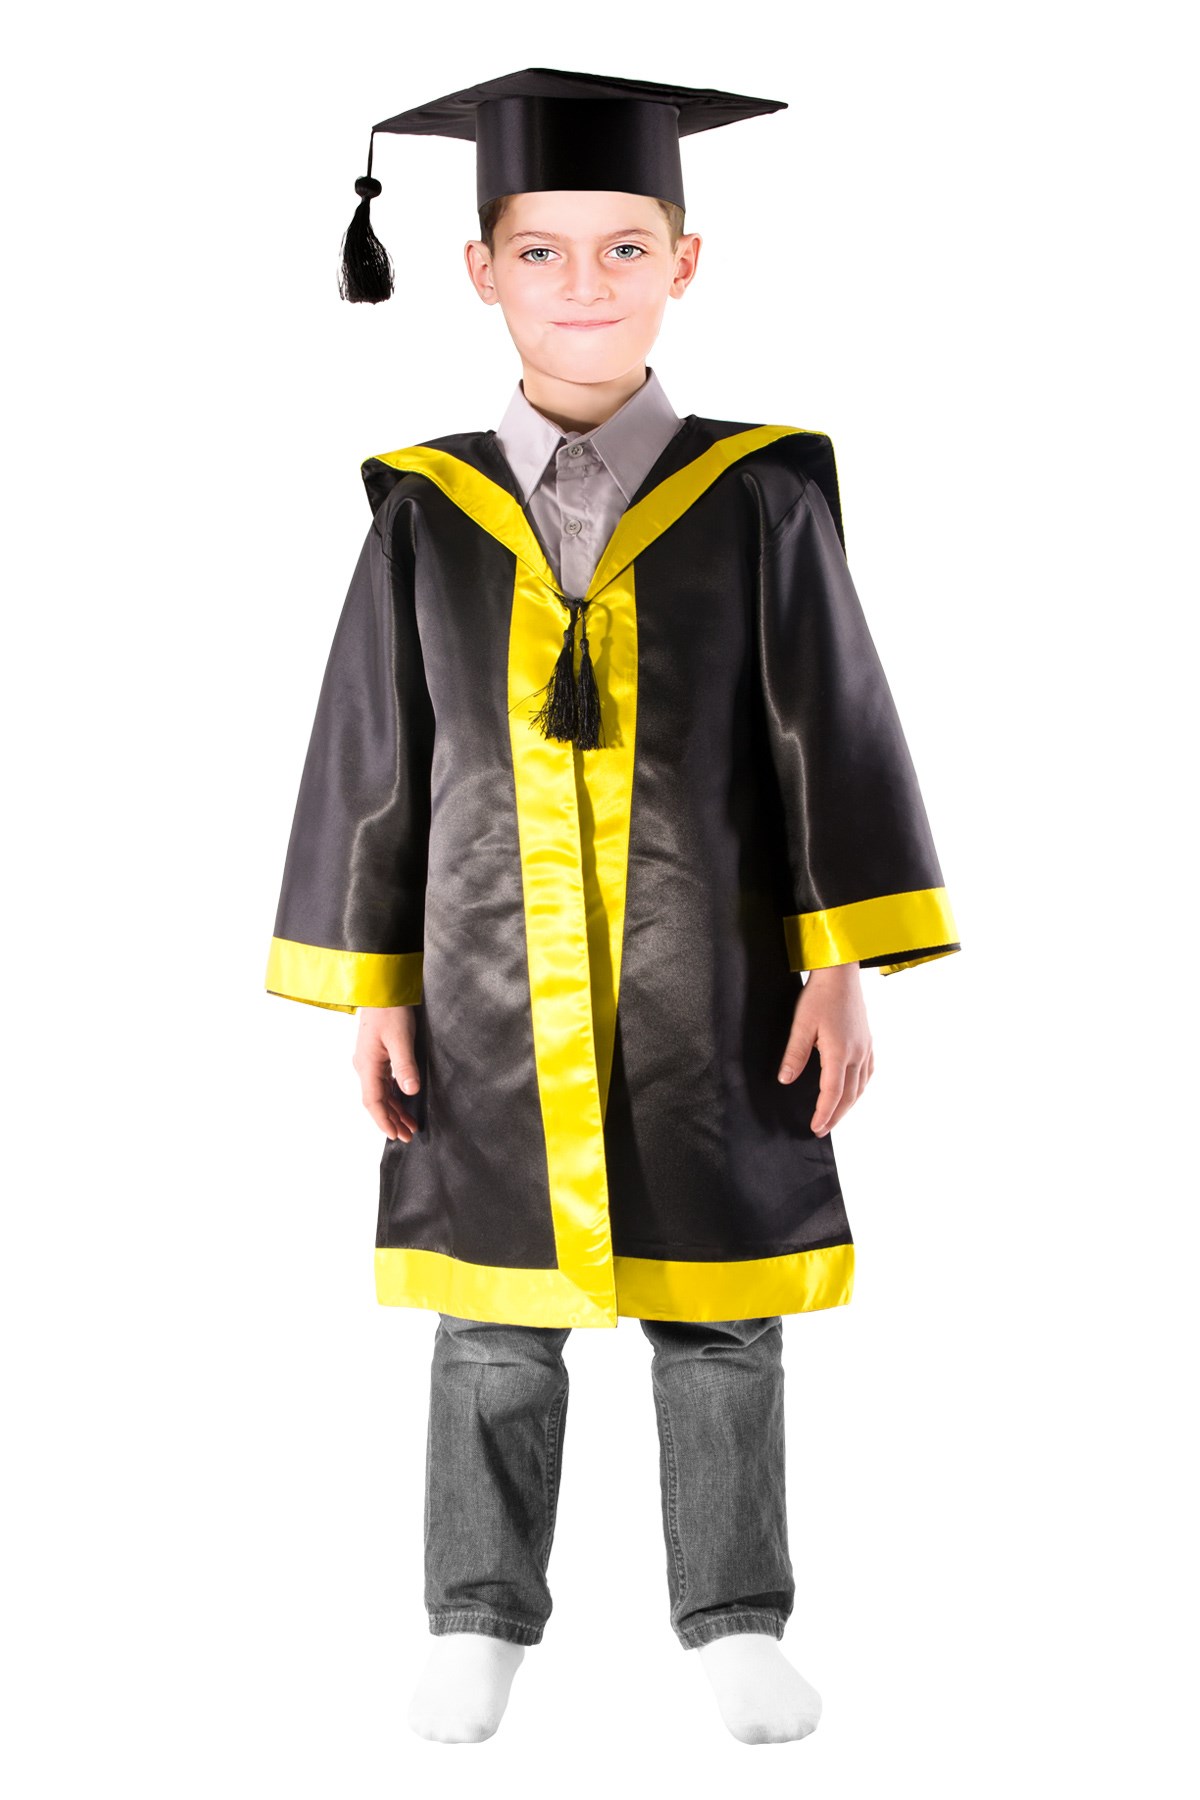 Çocuk Mezuniyet Kıyafeti - Mezuniyet Kostümü - Çocuk Kostümü Modelleri -  Oulabi Mir